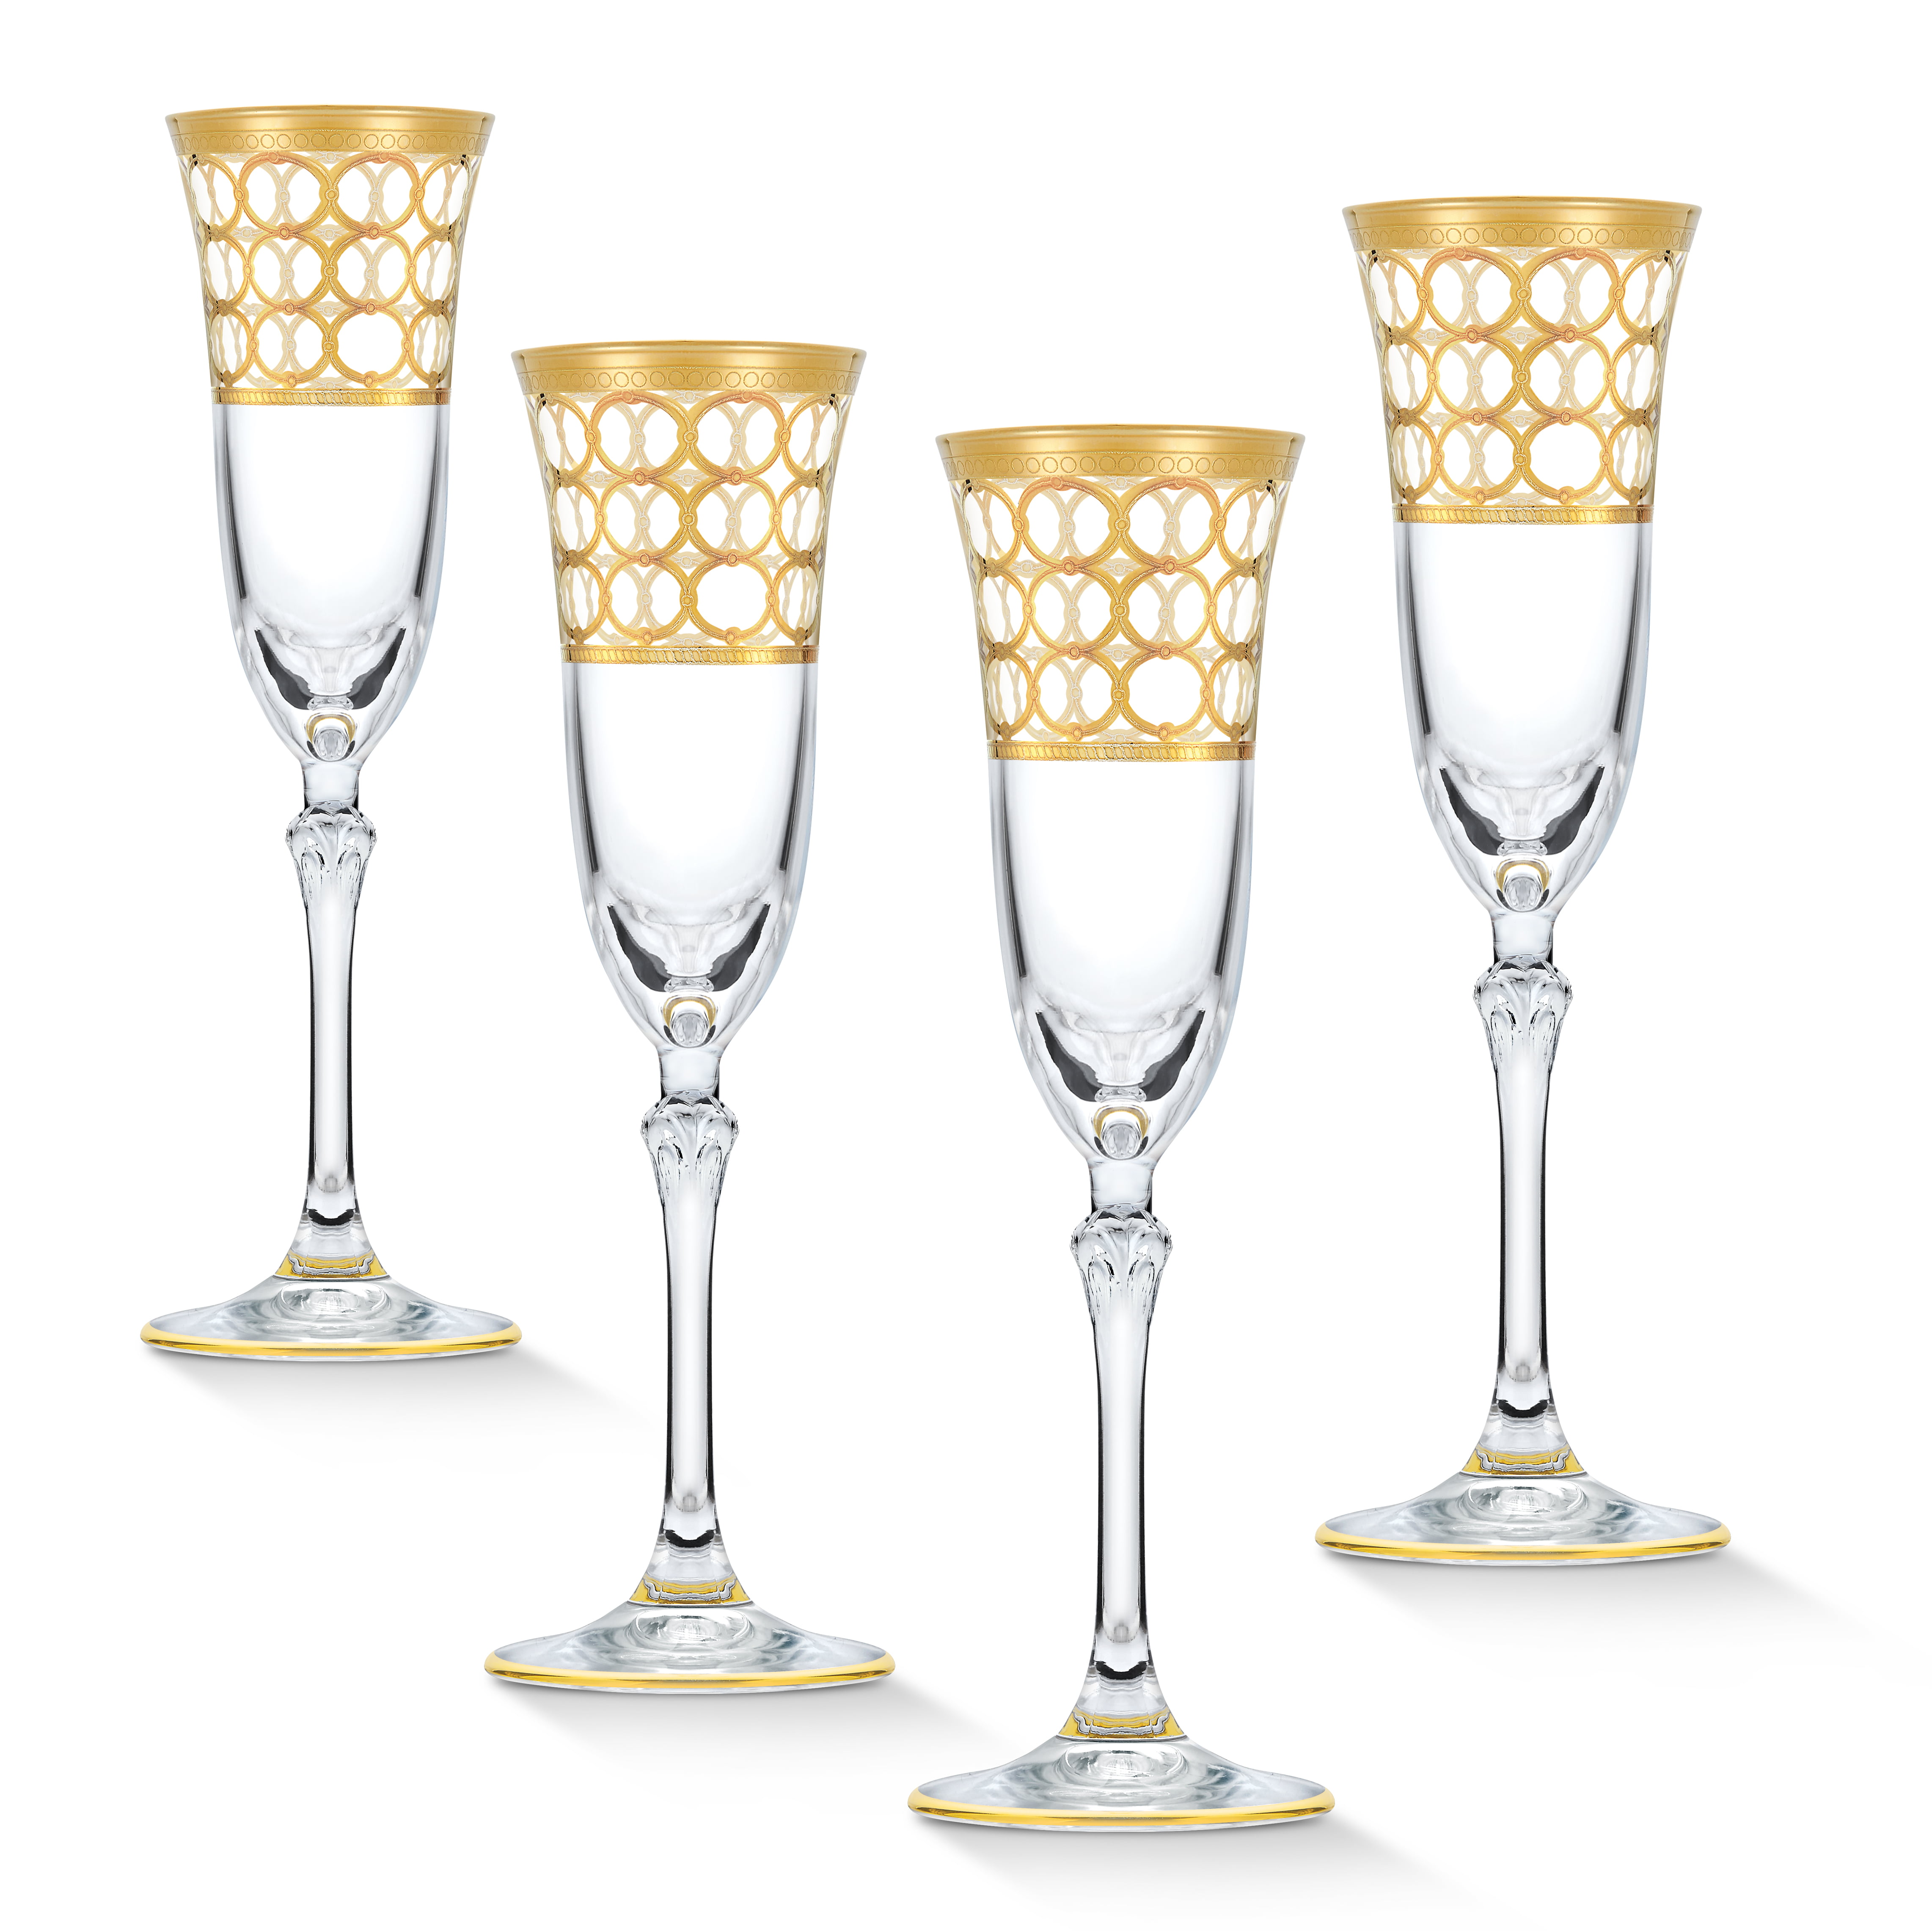 Crystal Glass Set of 6 Champagne Flute Wine 7oz Gold Plated Floral Rimmed Design 